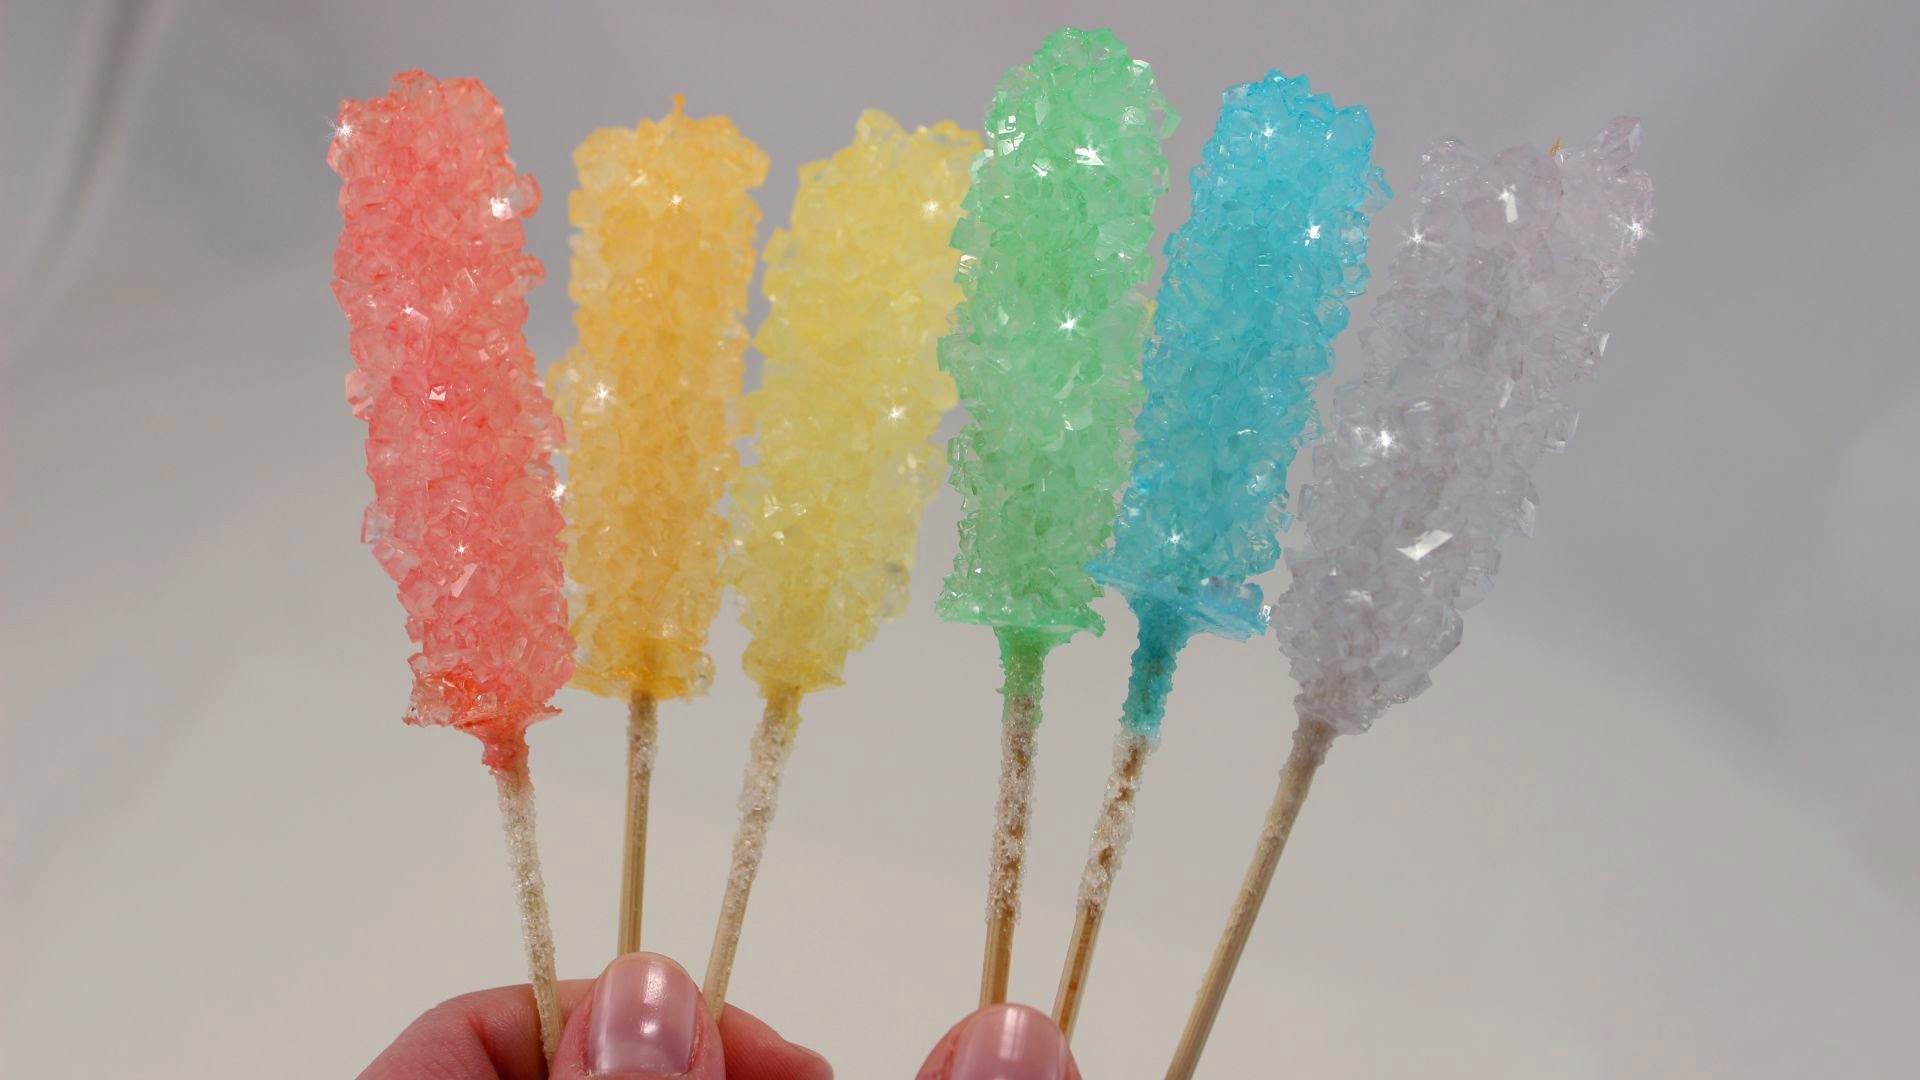 DIY Rock Candy DEUTSCH | Zuckerkristalle züchten | Kandis selber machen